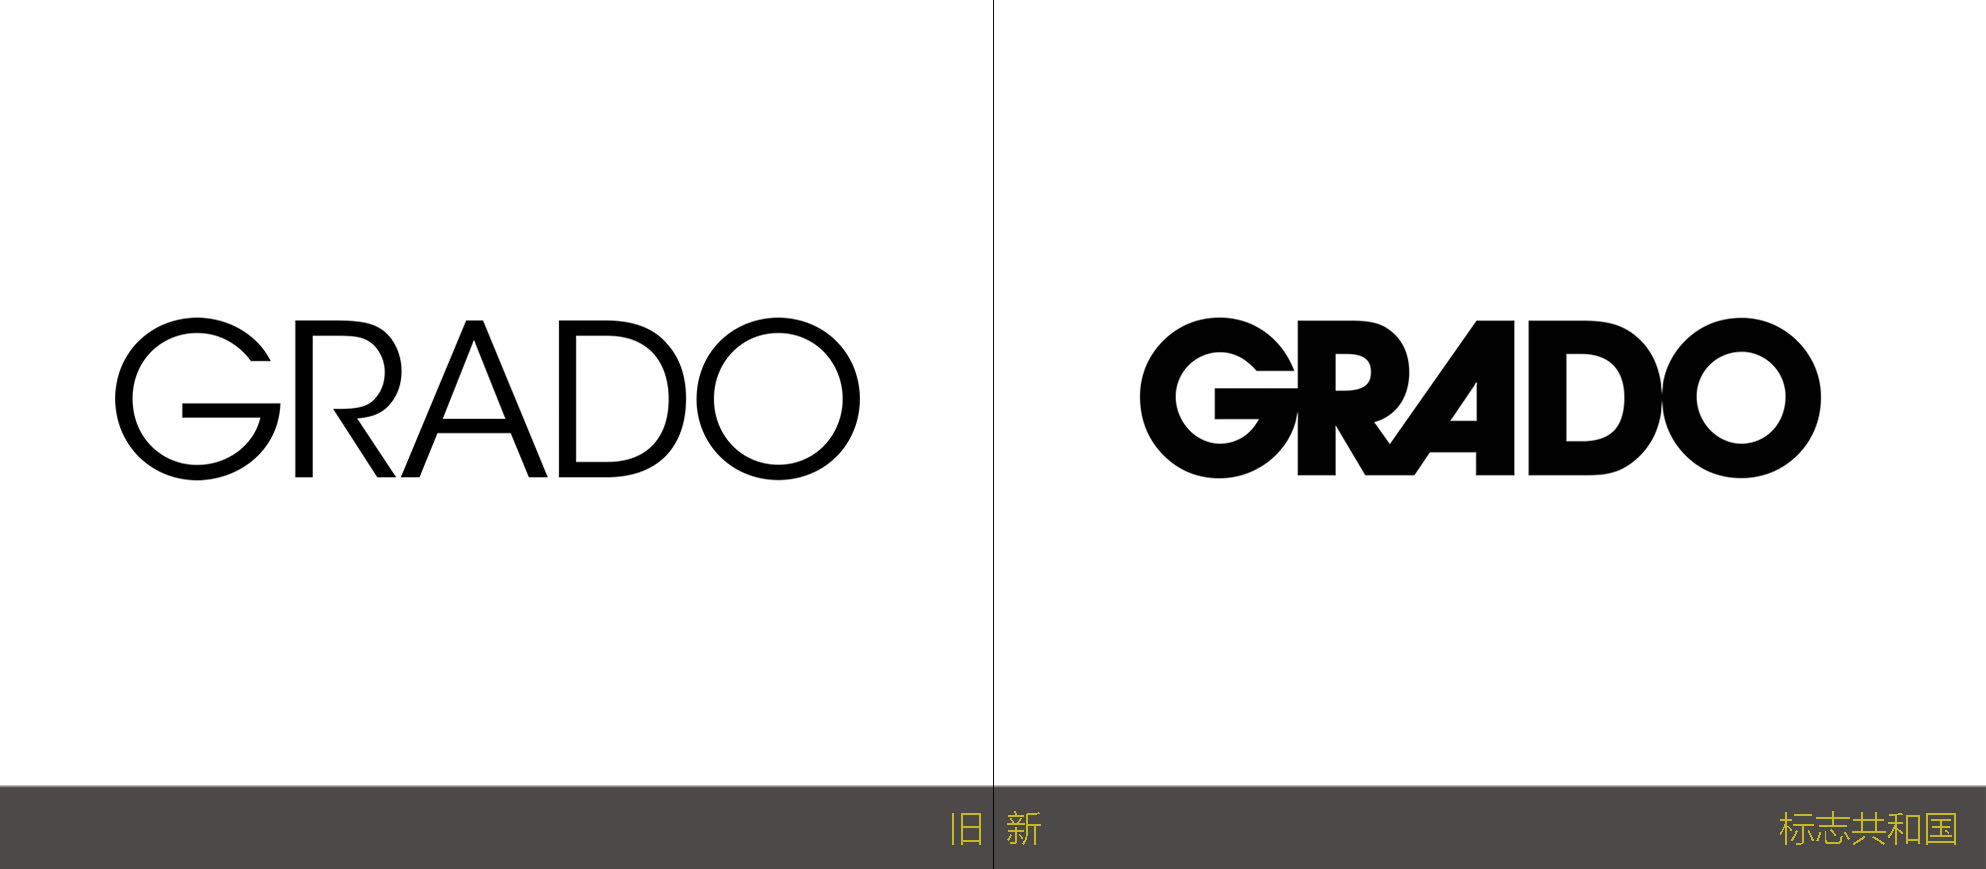 耳机制造商歌德Grado发布新Logo